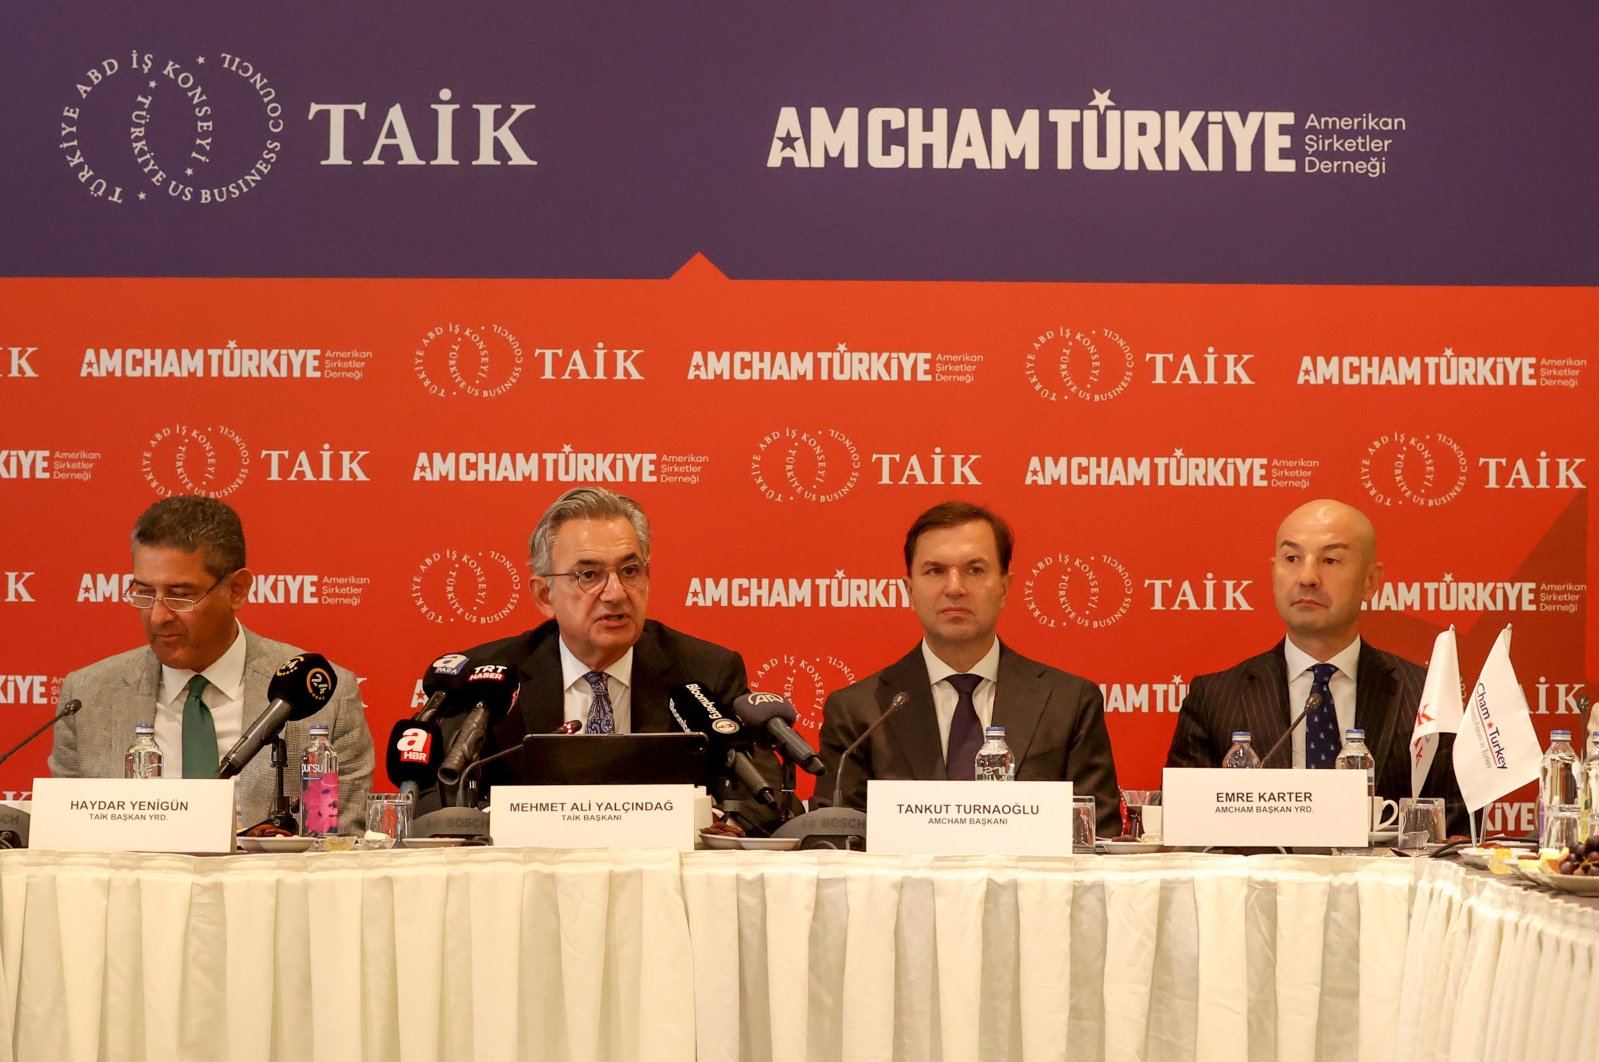 Türkiye-U.S. Business Council (TAIK) Chairperson Mehmet Ali Yalçındağ (2L), AmCham of Türkiye President Tankut Turnaoğlu (2R) during the news conference, Istanbul, Türkiye, Sept. 7, 2023. (AA Photo)